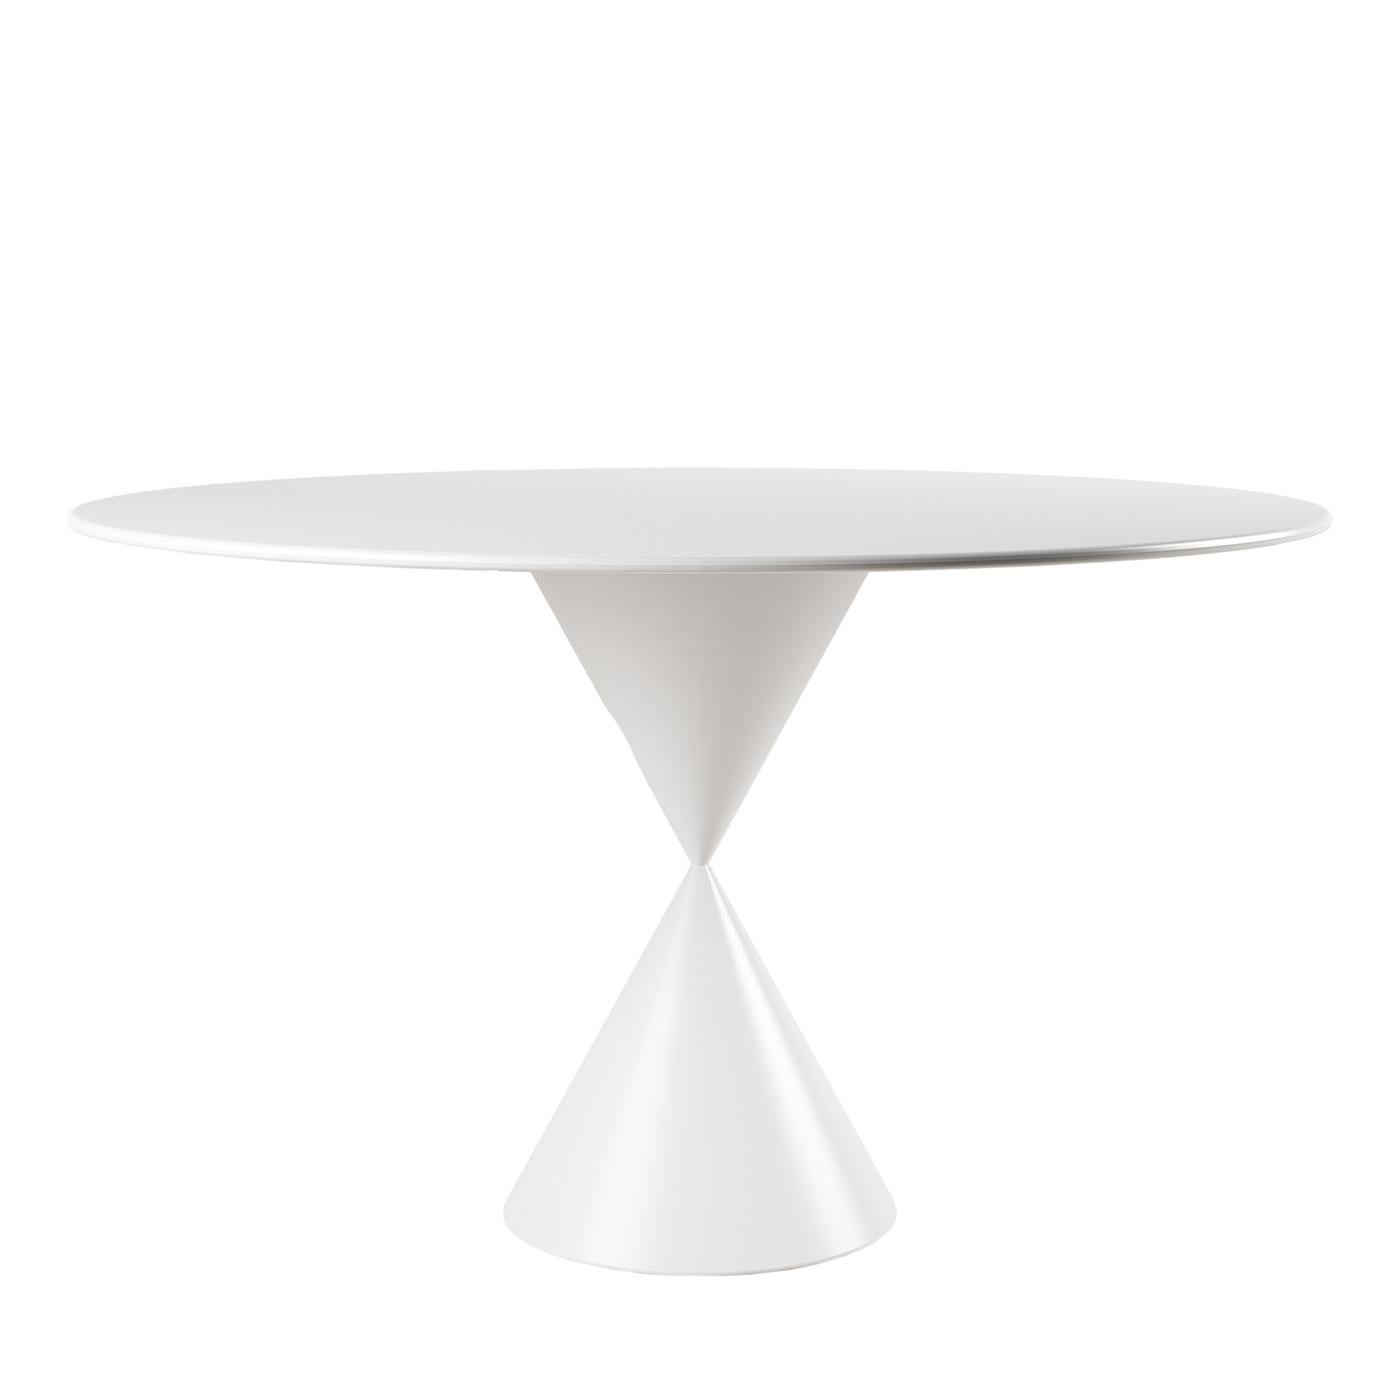 CON-TATTO White Dining Table by Walter De Silva